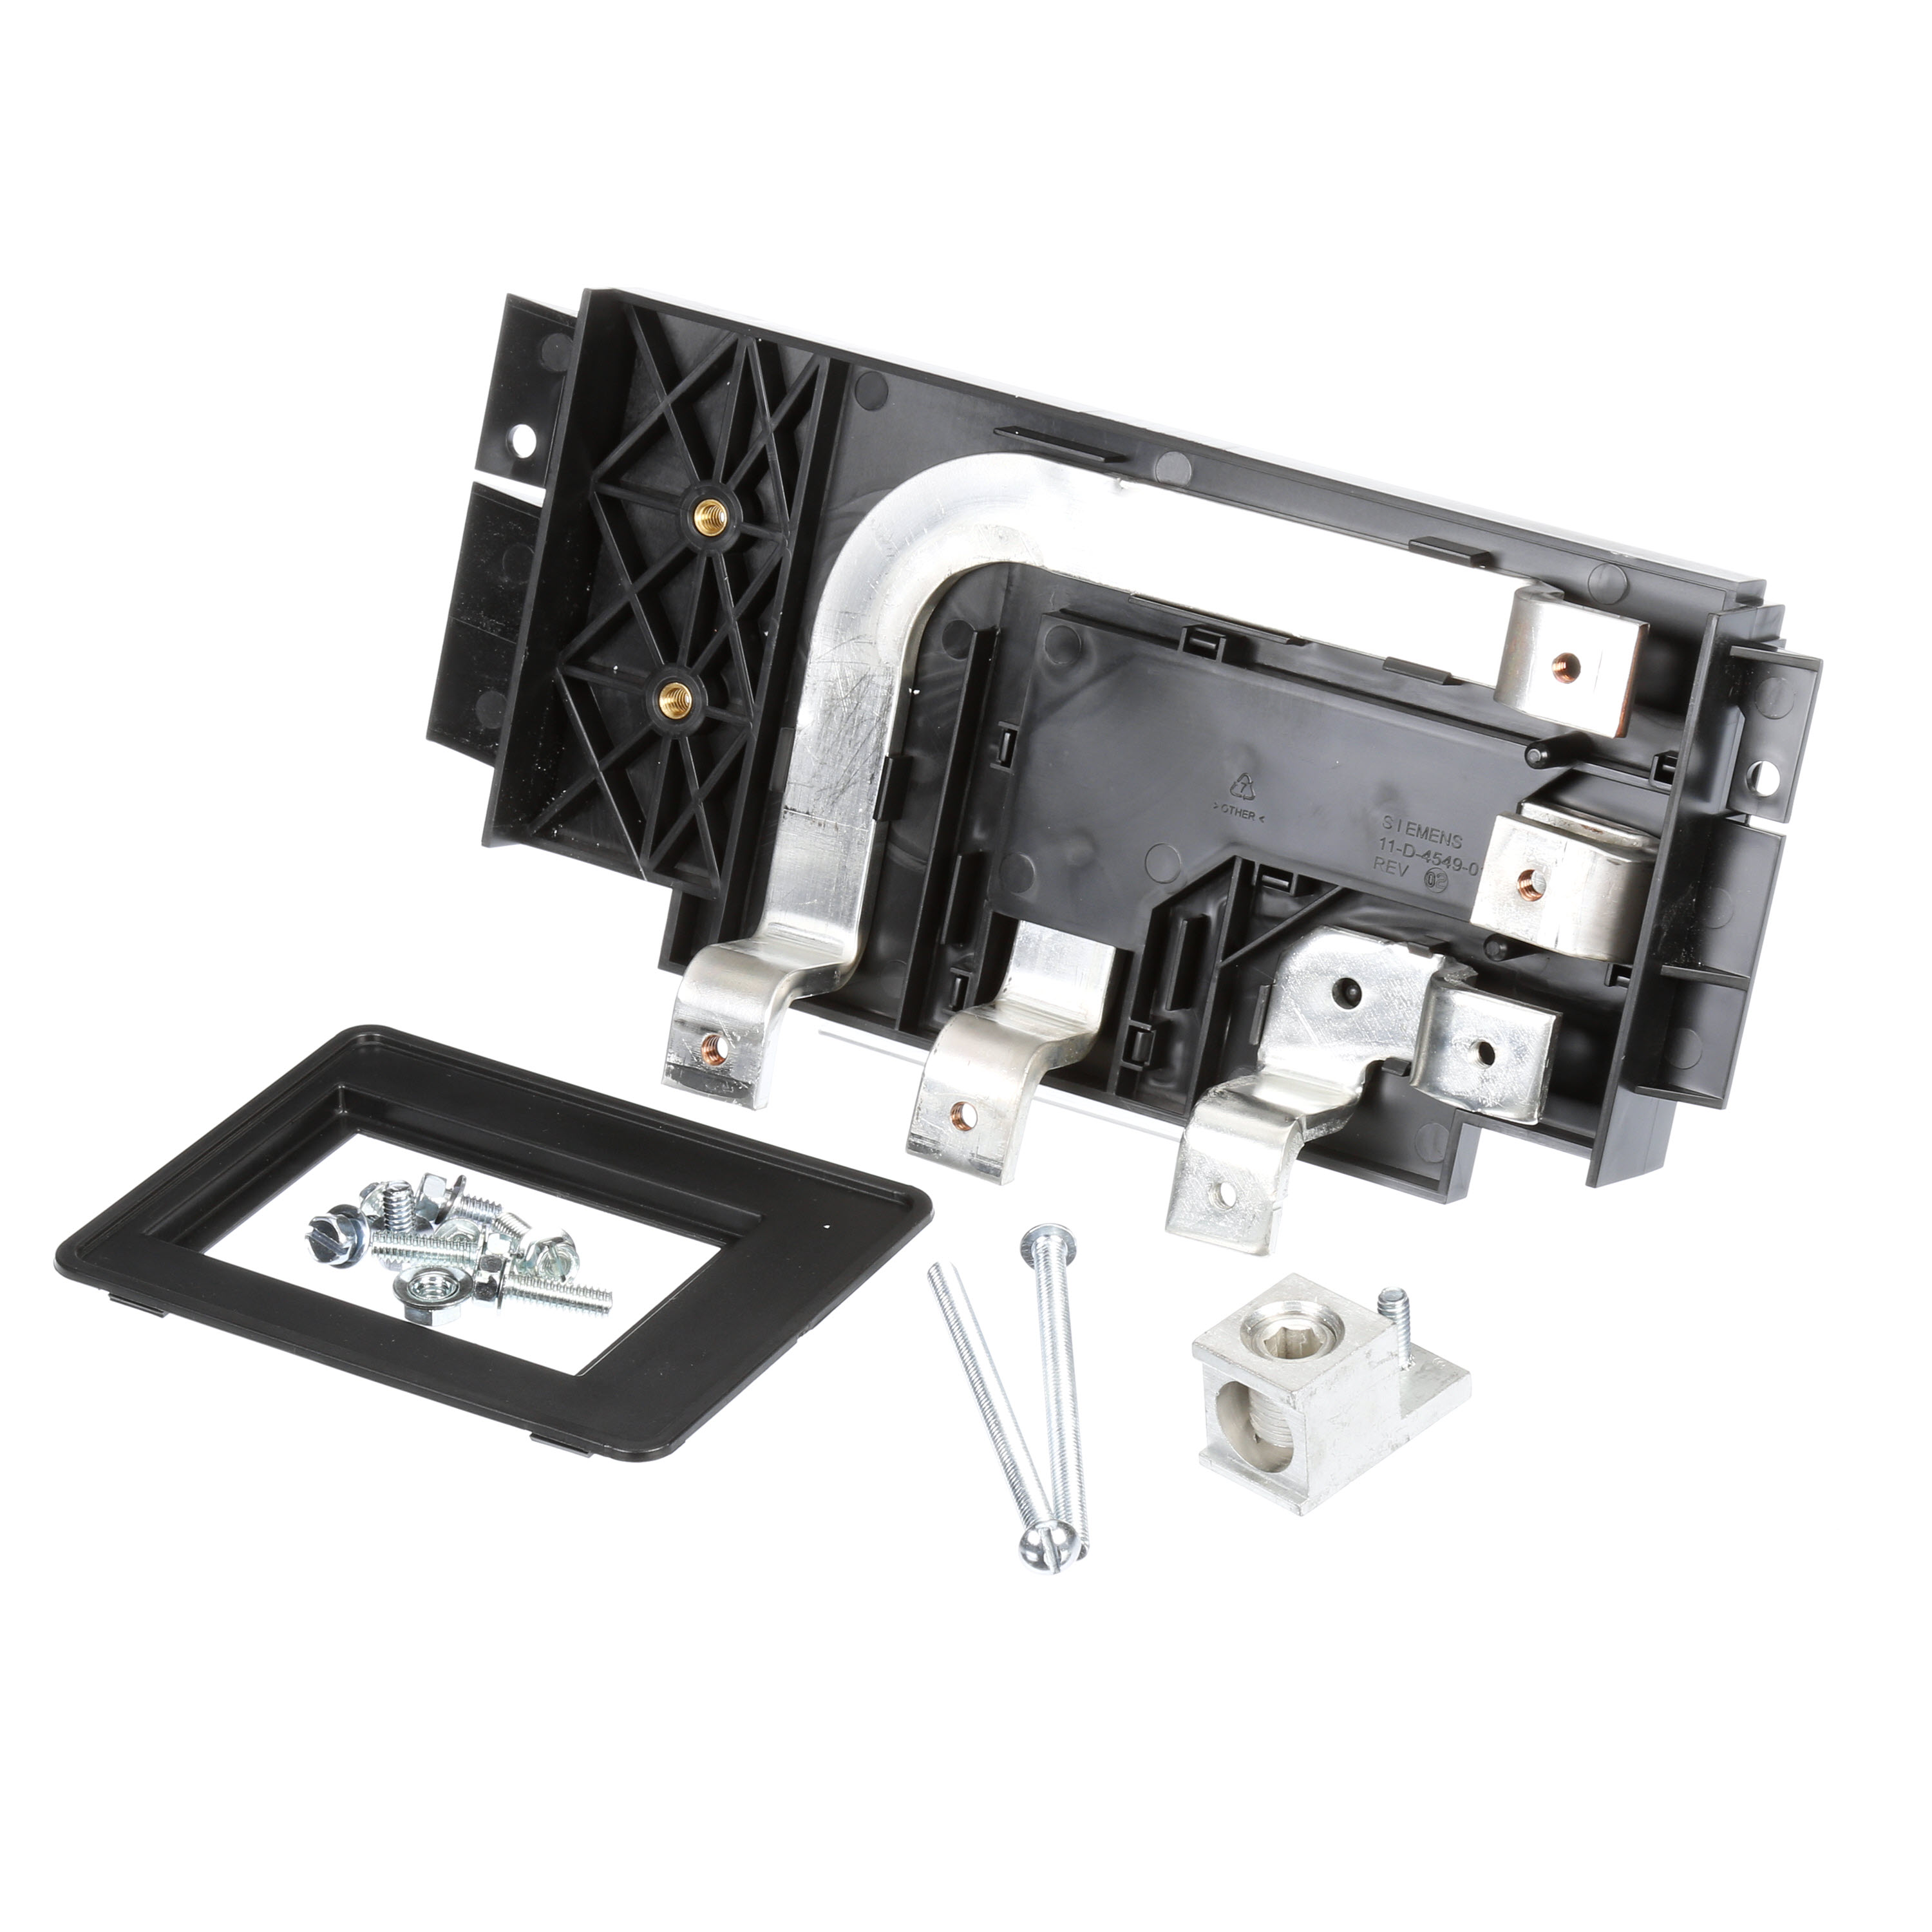 Circuit breaker mounting kit 